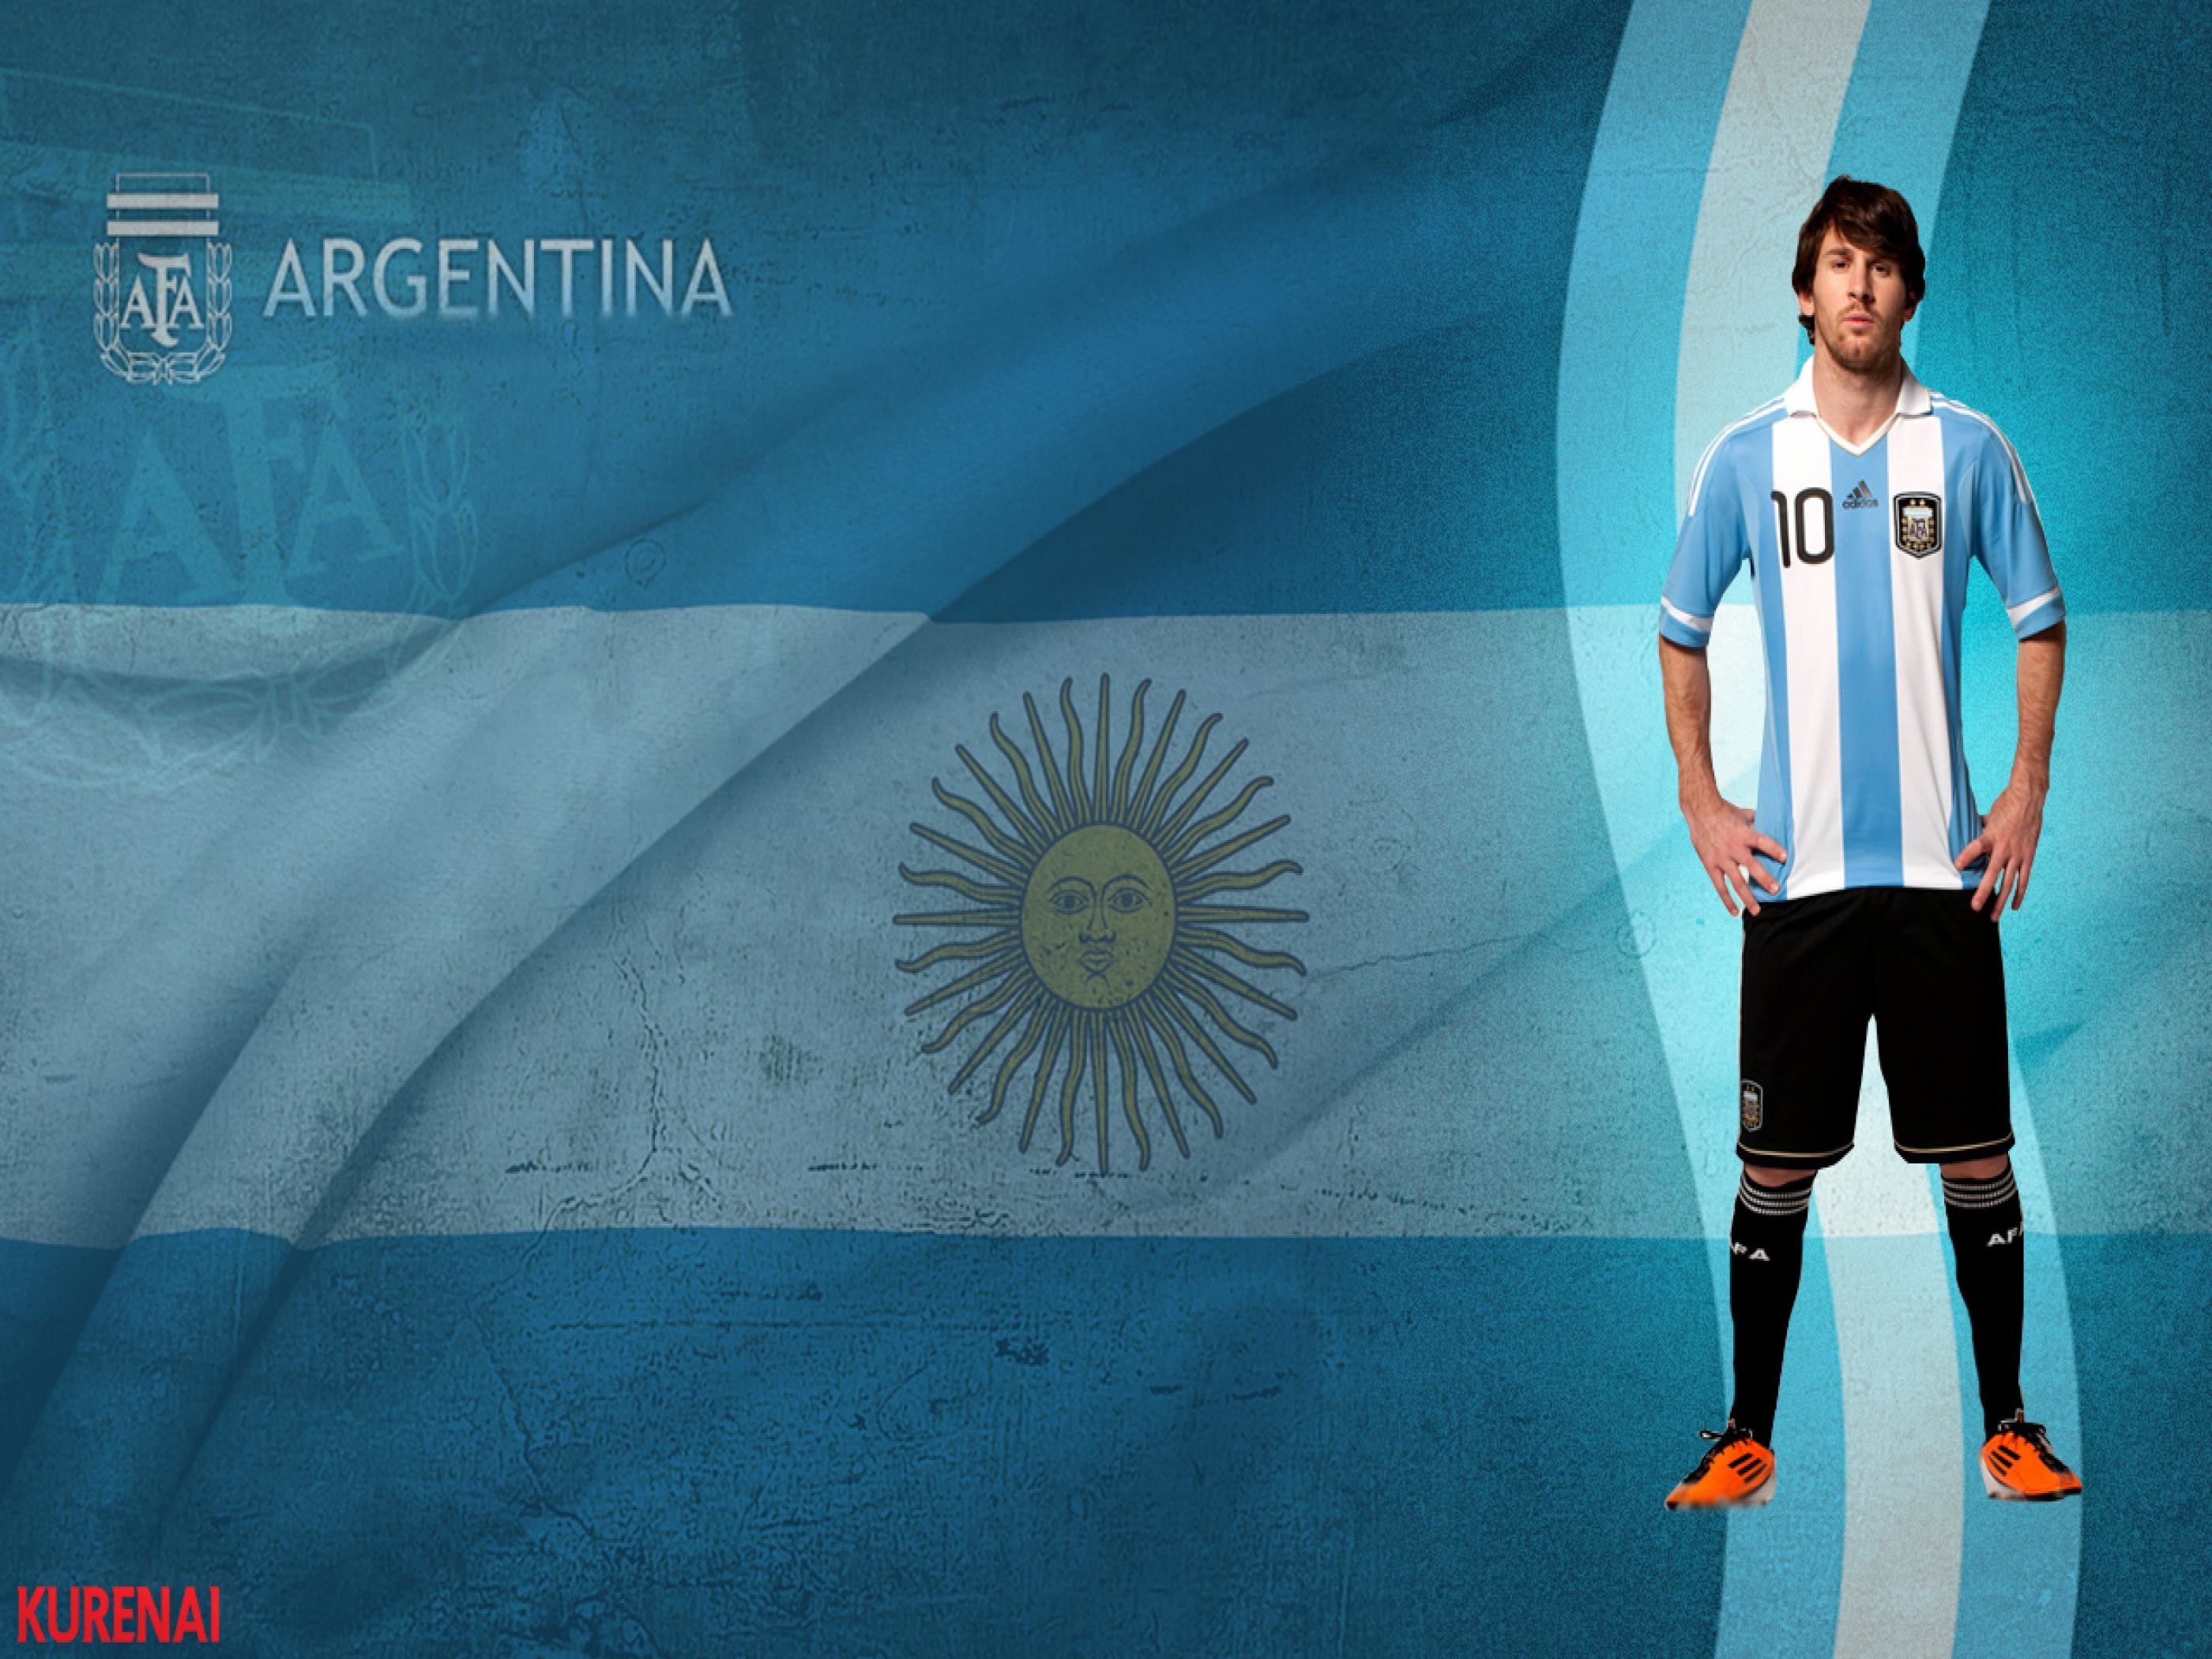 2800x2100 ... Argentina Flag Wallpaper ZU64Y98 Picserio com